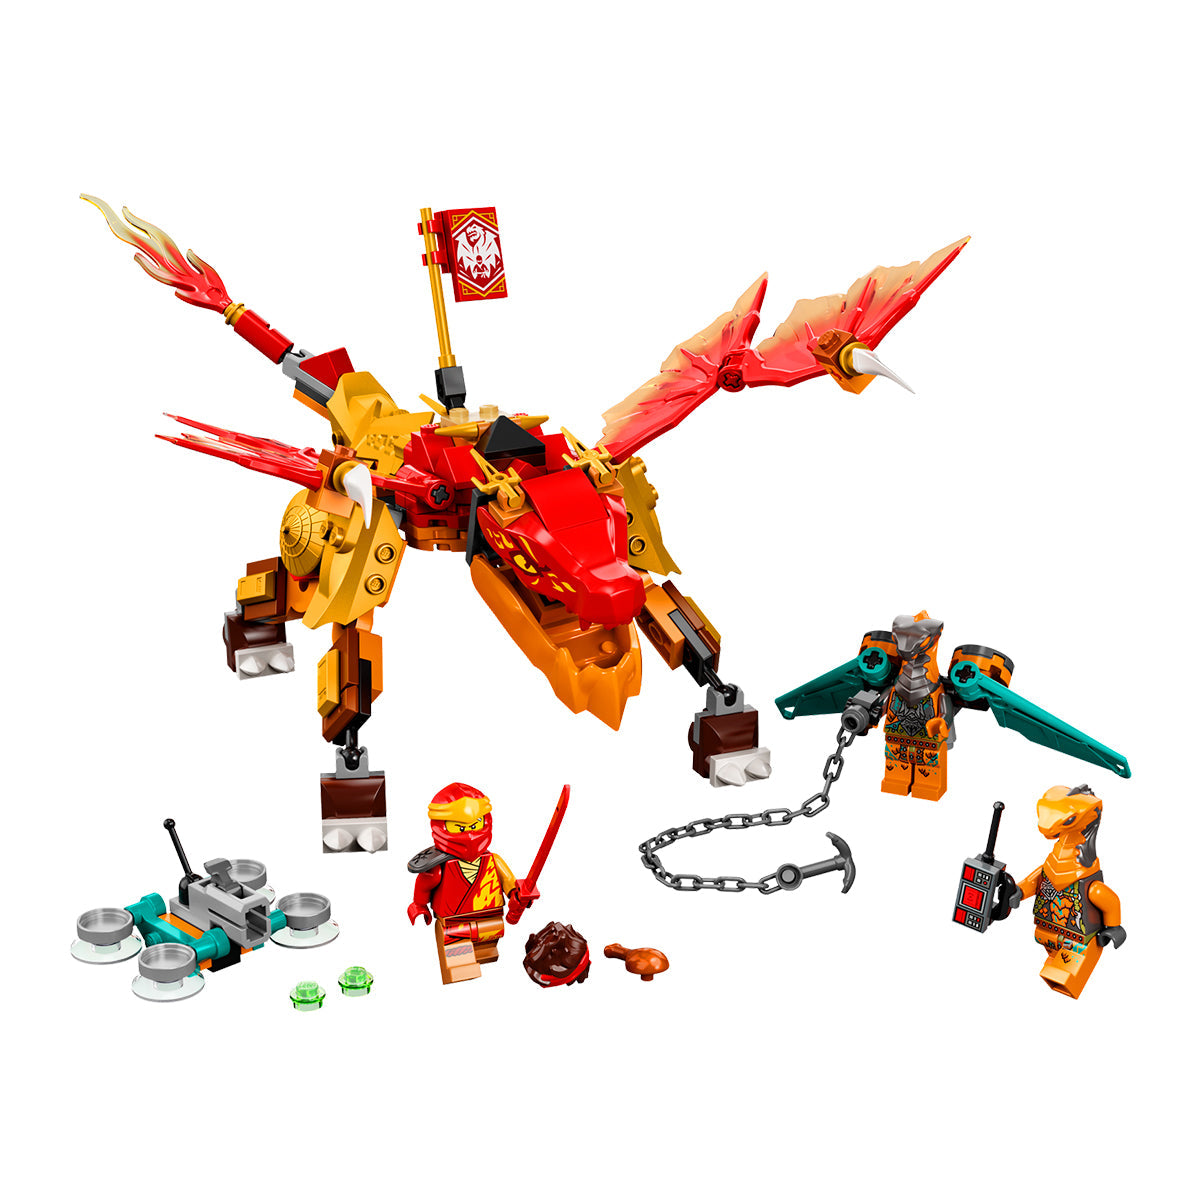 LEGO NINJAGO - Kai's Fire Dragon EVO 71762